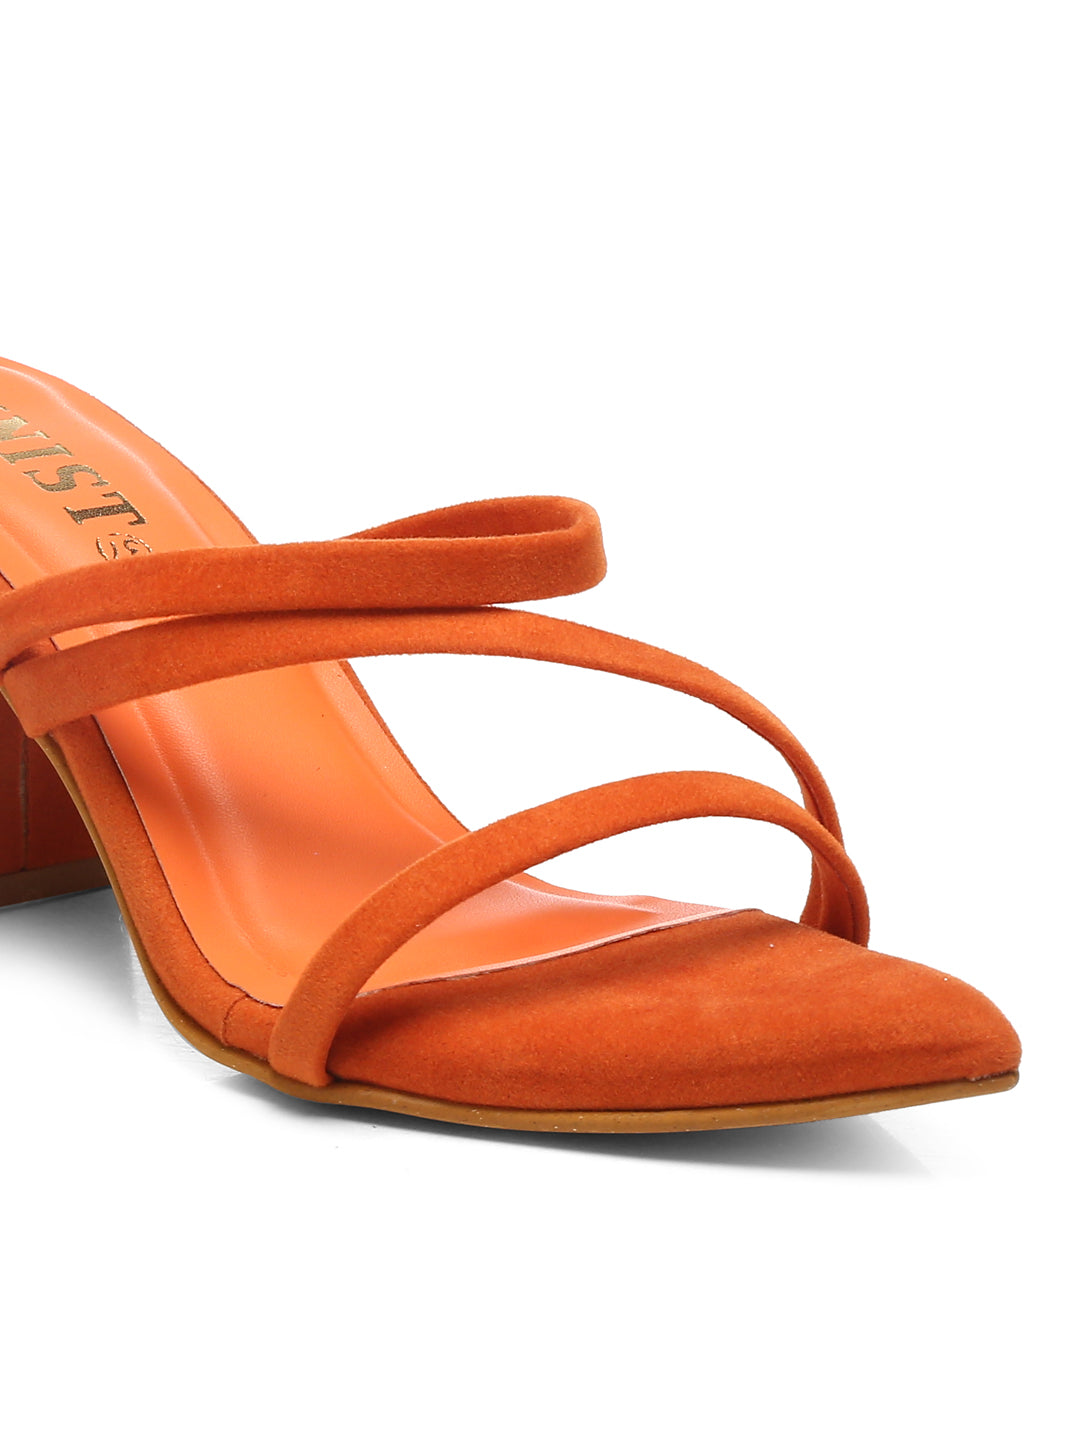 GNIST Super Pointed Orange Stilettos Heels